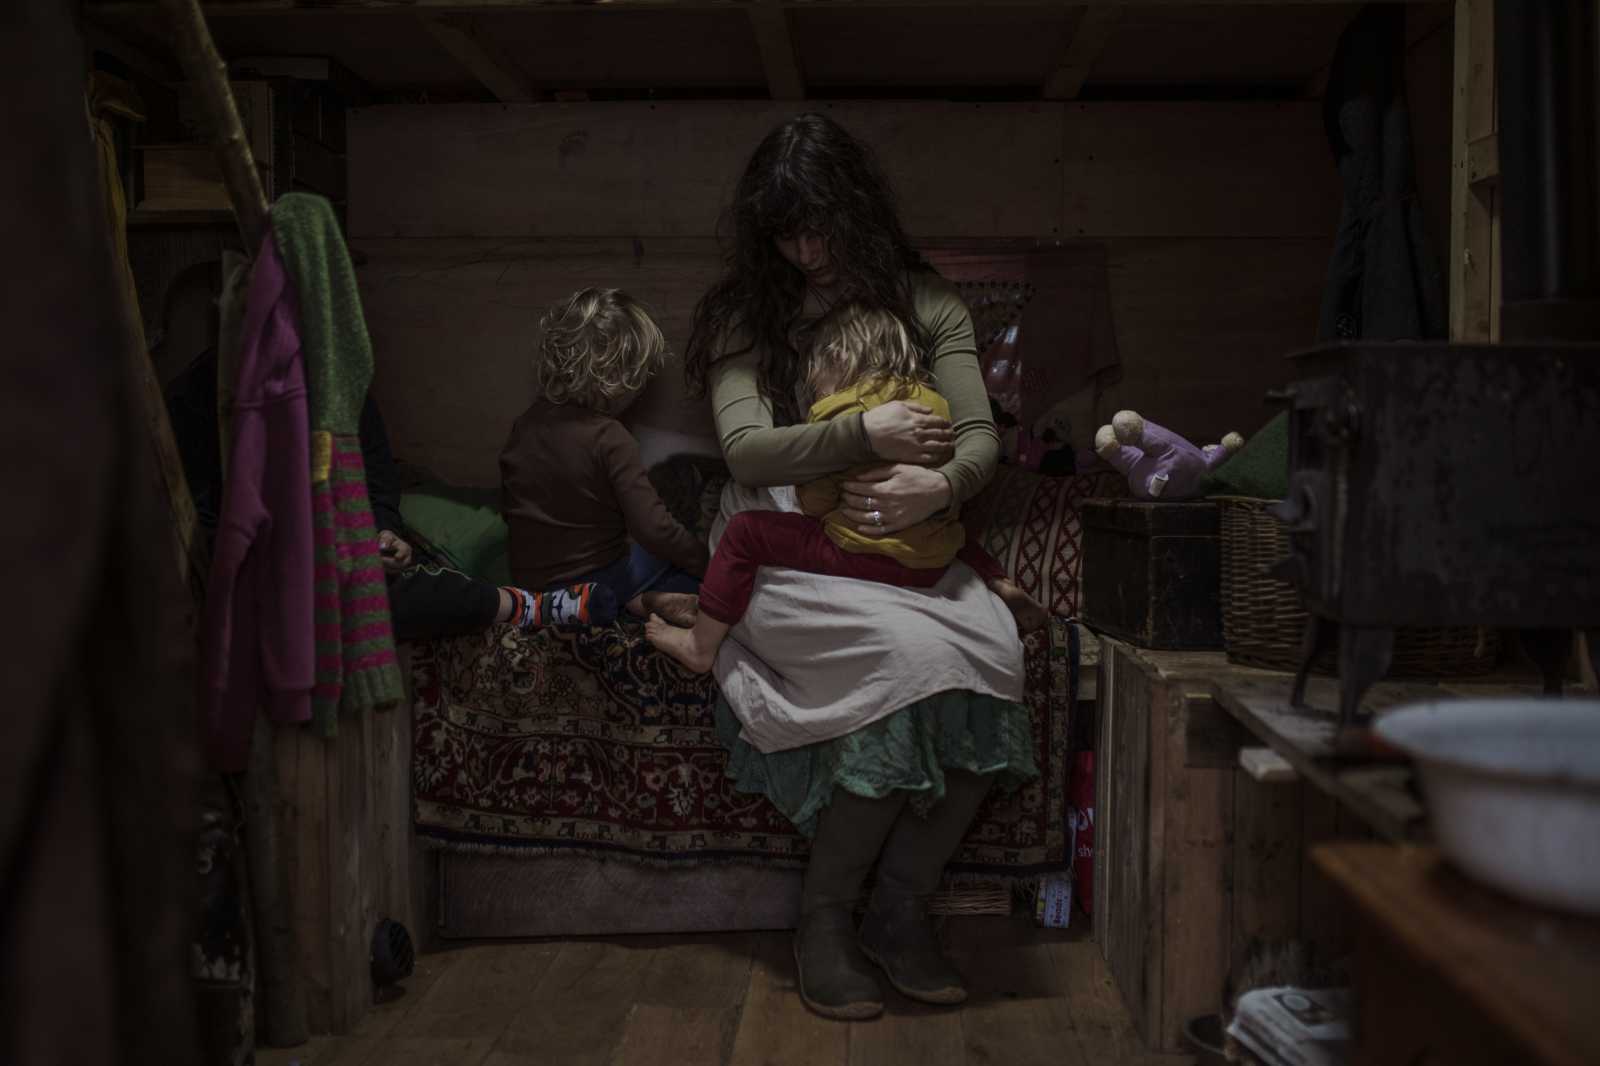 Halasi Eszter (szabadfoglalkozású) Az utolsó utazók című sorozatával a Társadalomábrázolás, dokumentarista fotográfia kategória másodikja. A kiválasztott kép címe: Athéna gyermekeivel.